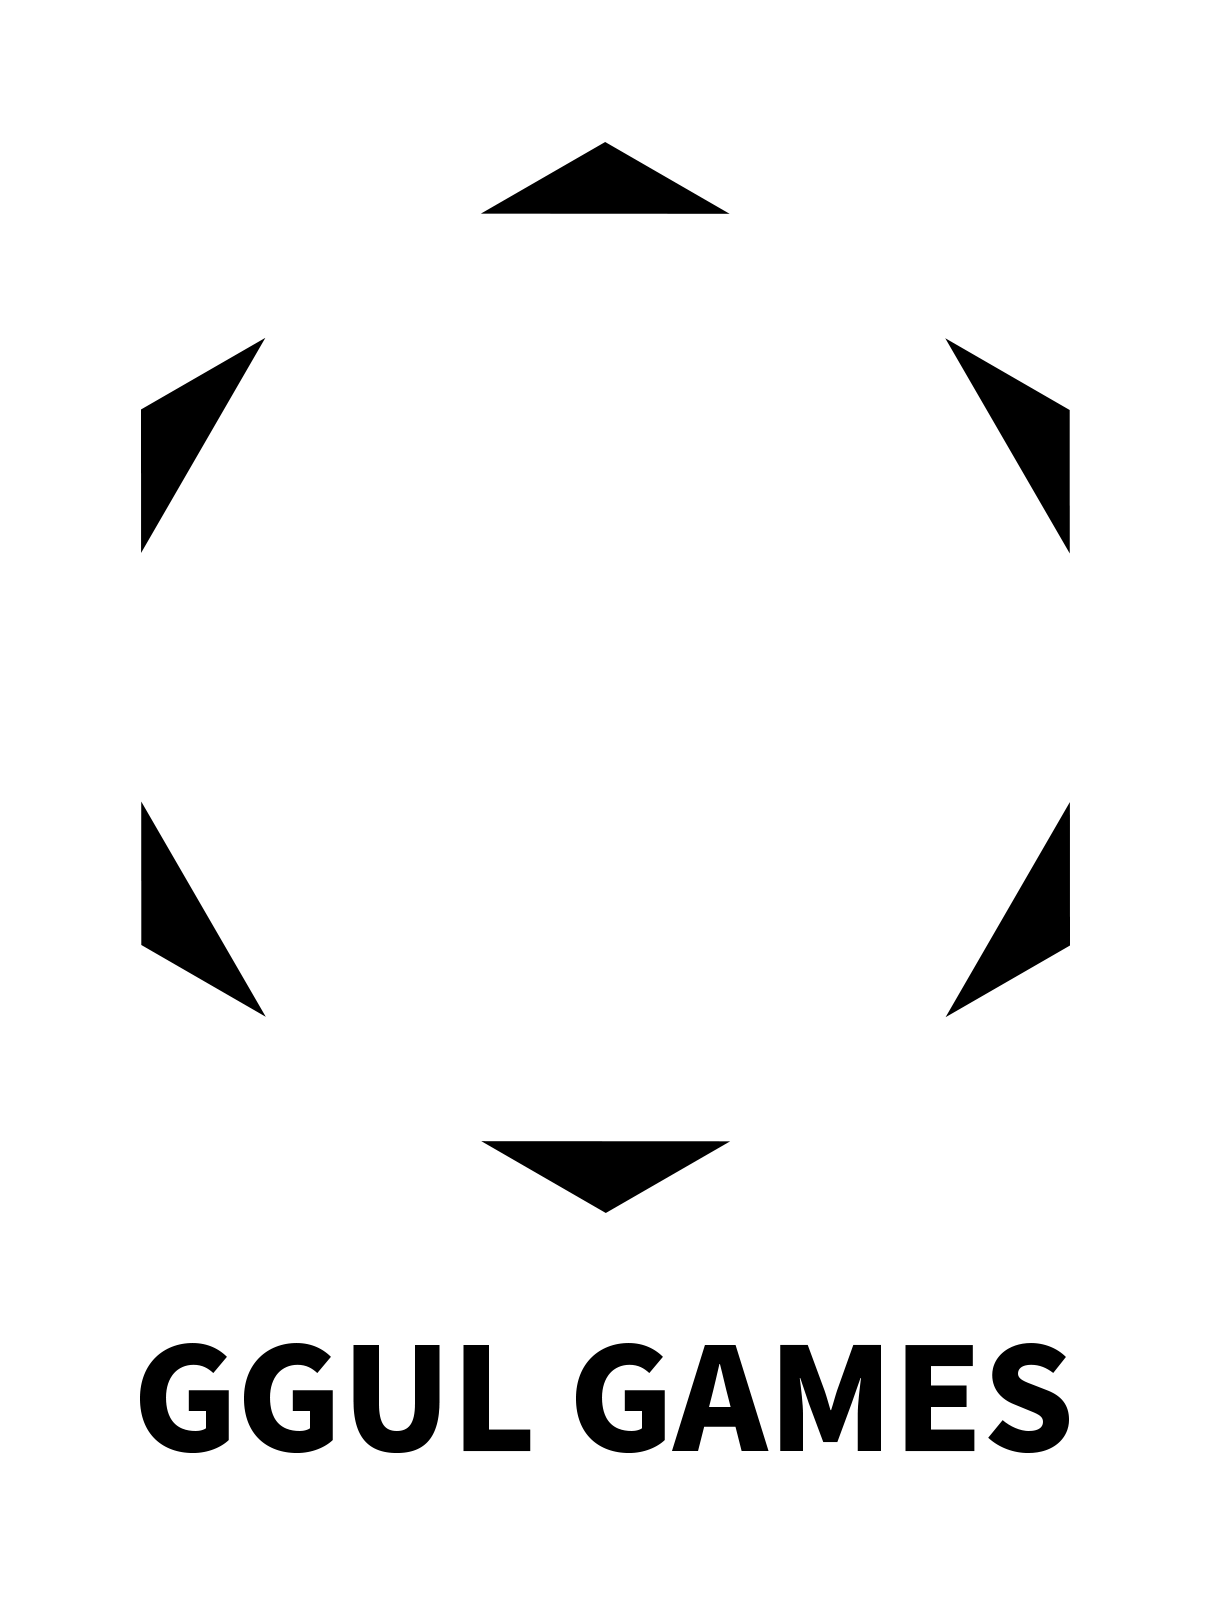 Bioshield Co., Ltd. logo image